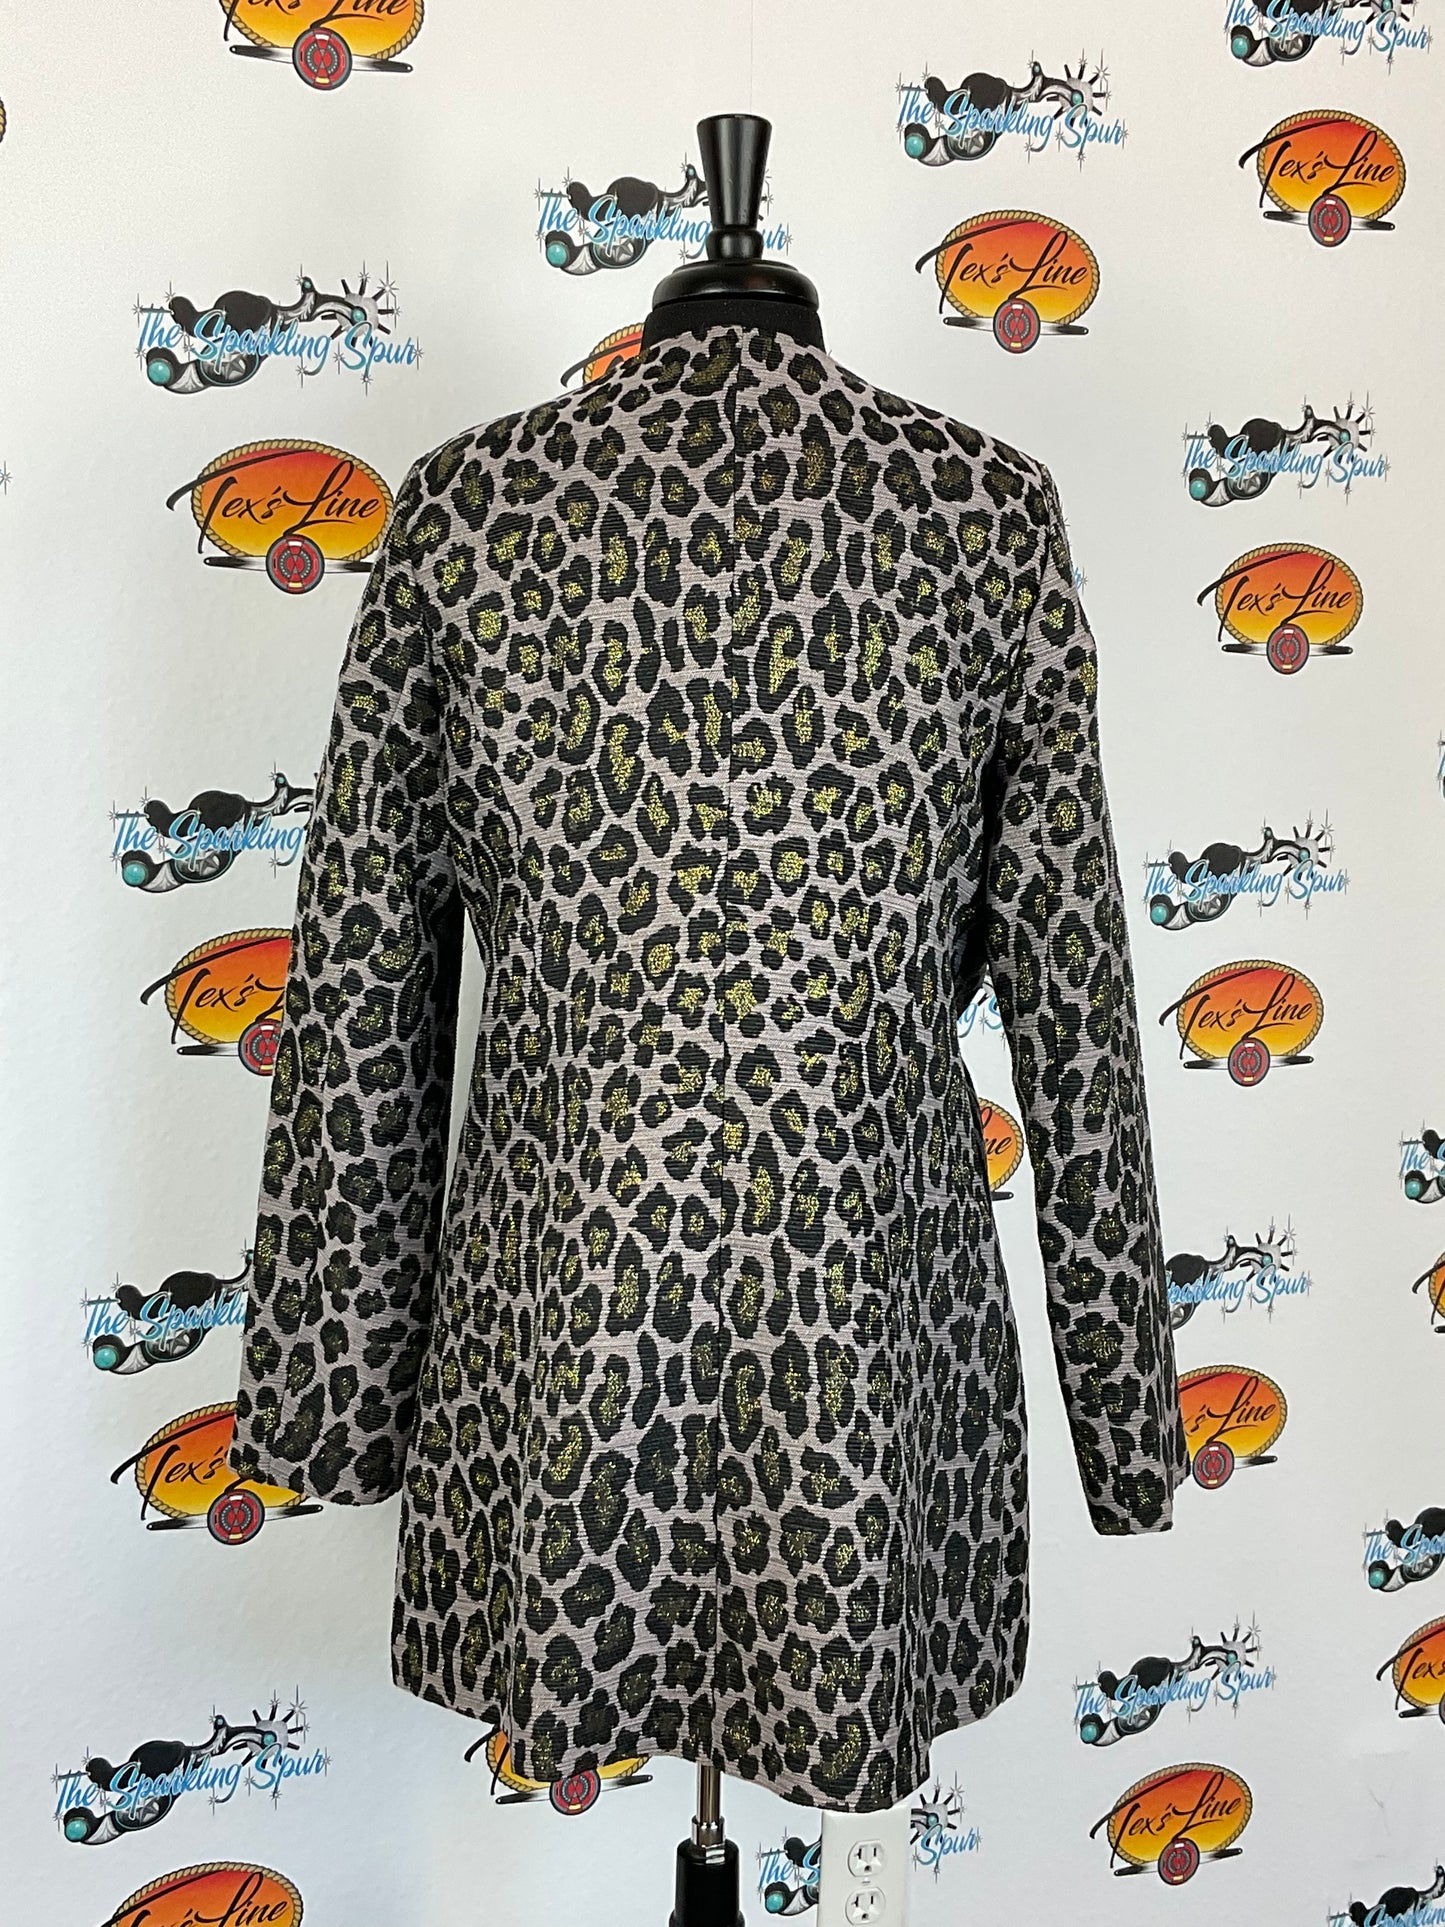 The Cheetah Jacket